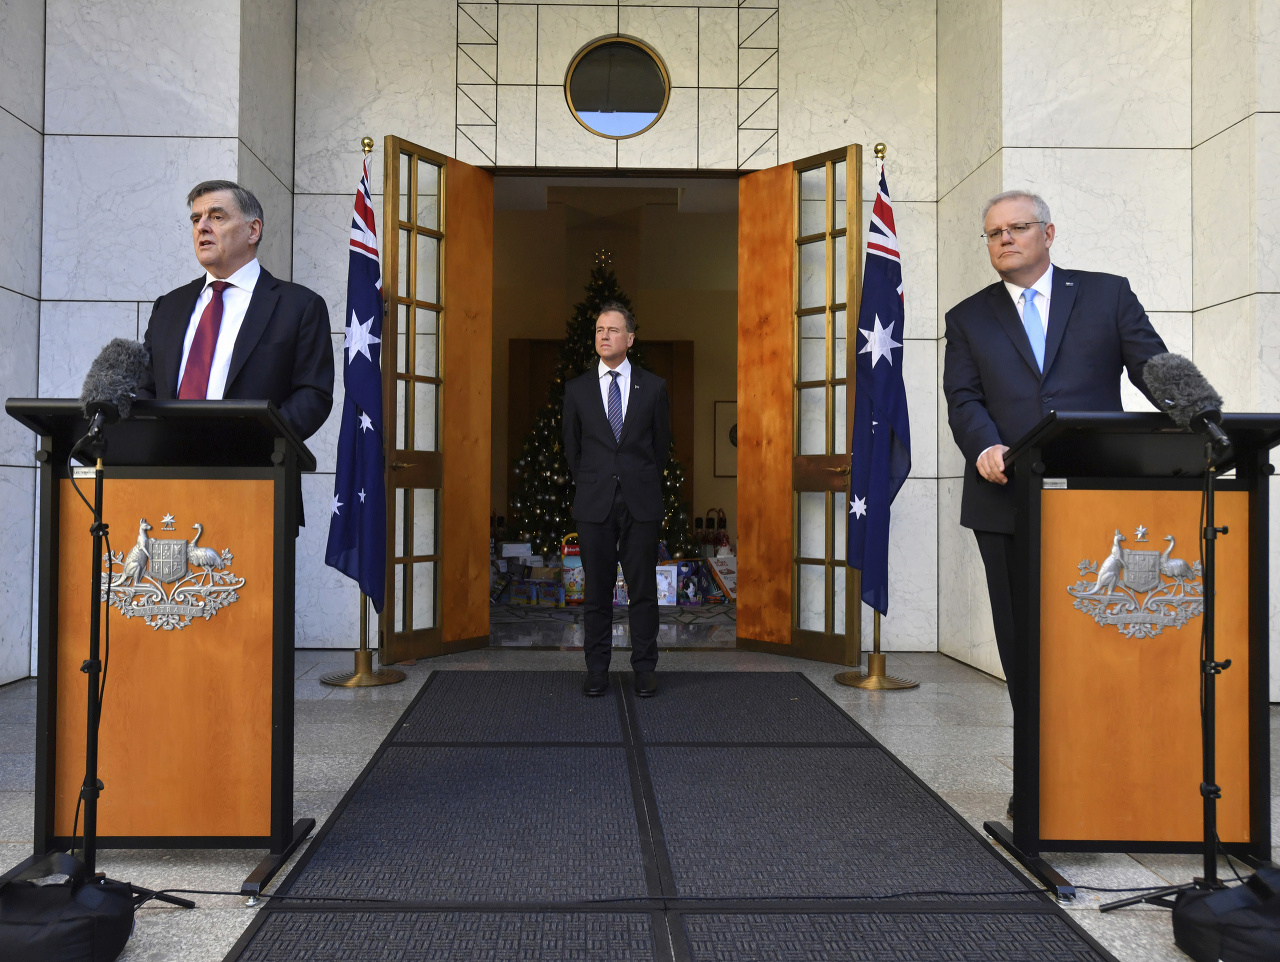 Austrálsky premiér Scott Morrison (vpravo), Brendan Murphy (vľavo) a austrálsky minister zdravotníctva Greg Hunt